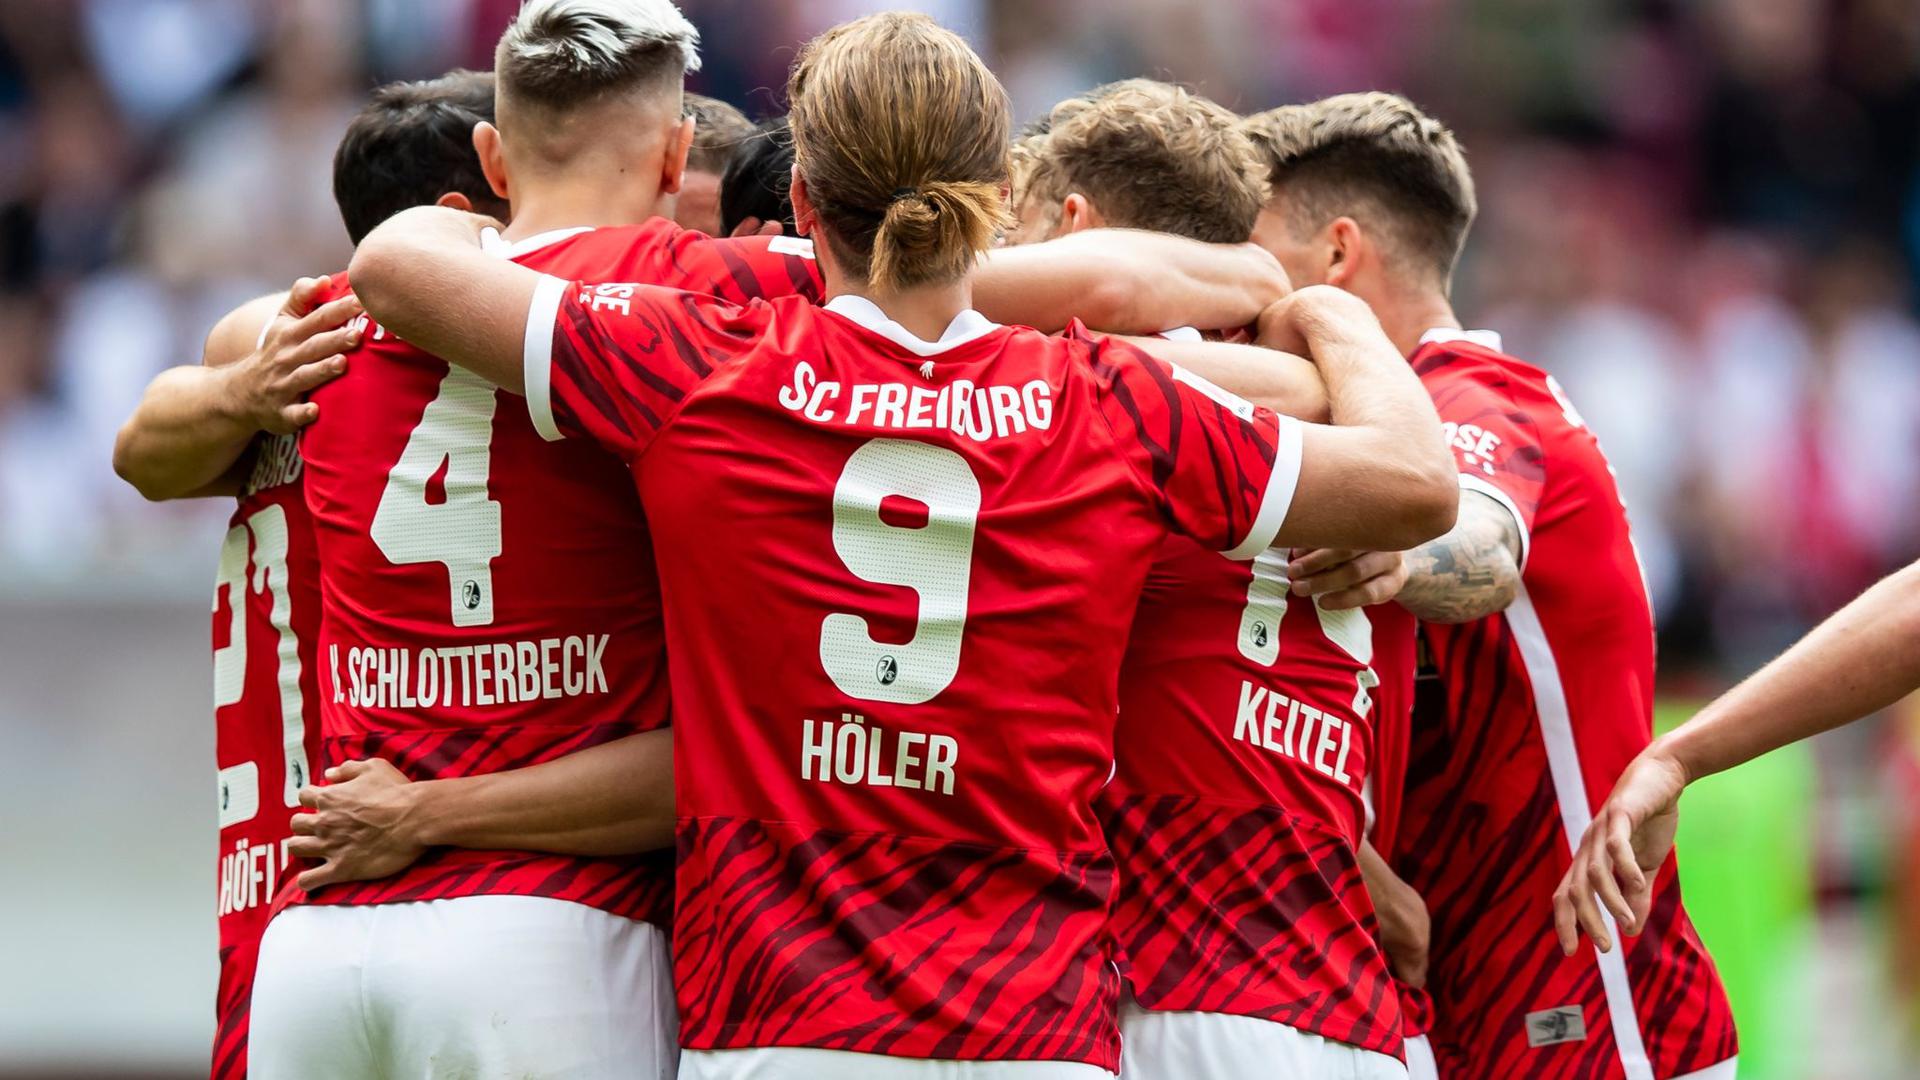 Der SC Freiburg hat das baden-württembergische Bundesliga-Duell mit dem VfB Stuttgart für sich entschieden.